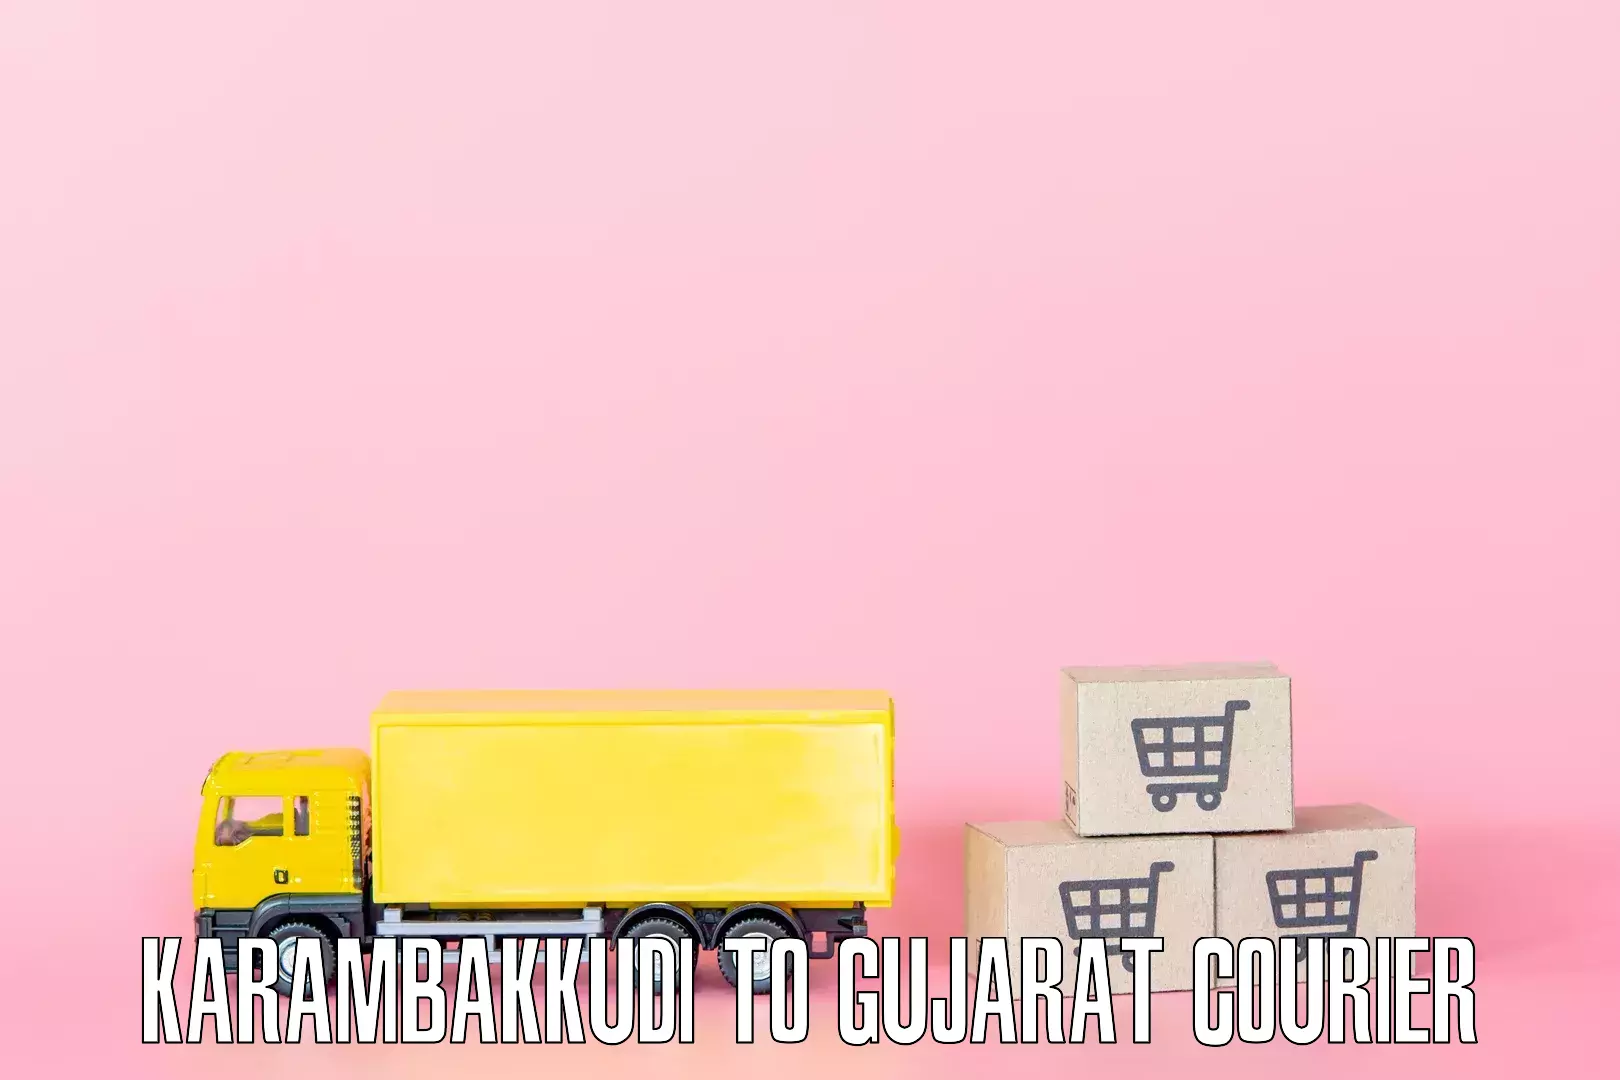 Furniture relocation services Karambakkudi to Gujarat